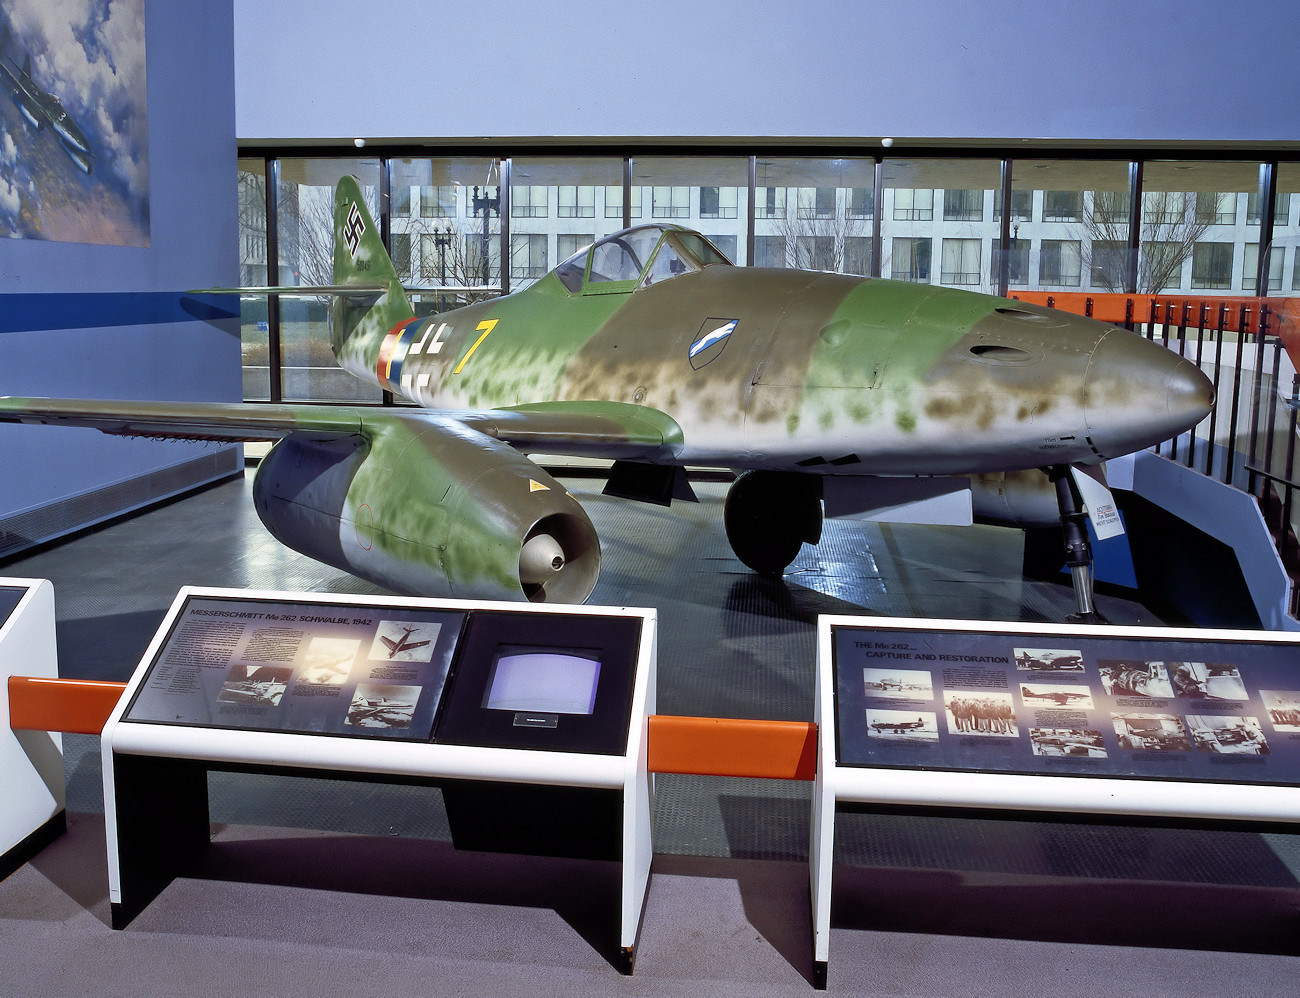 Messerschmitt Me 262 A-1a Schwalbe - der erste serienmäßig produzierte Jäger mit Strahltriebwerken